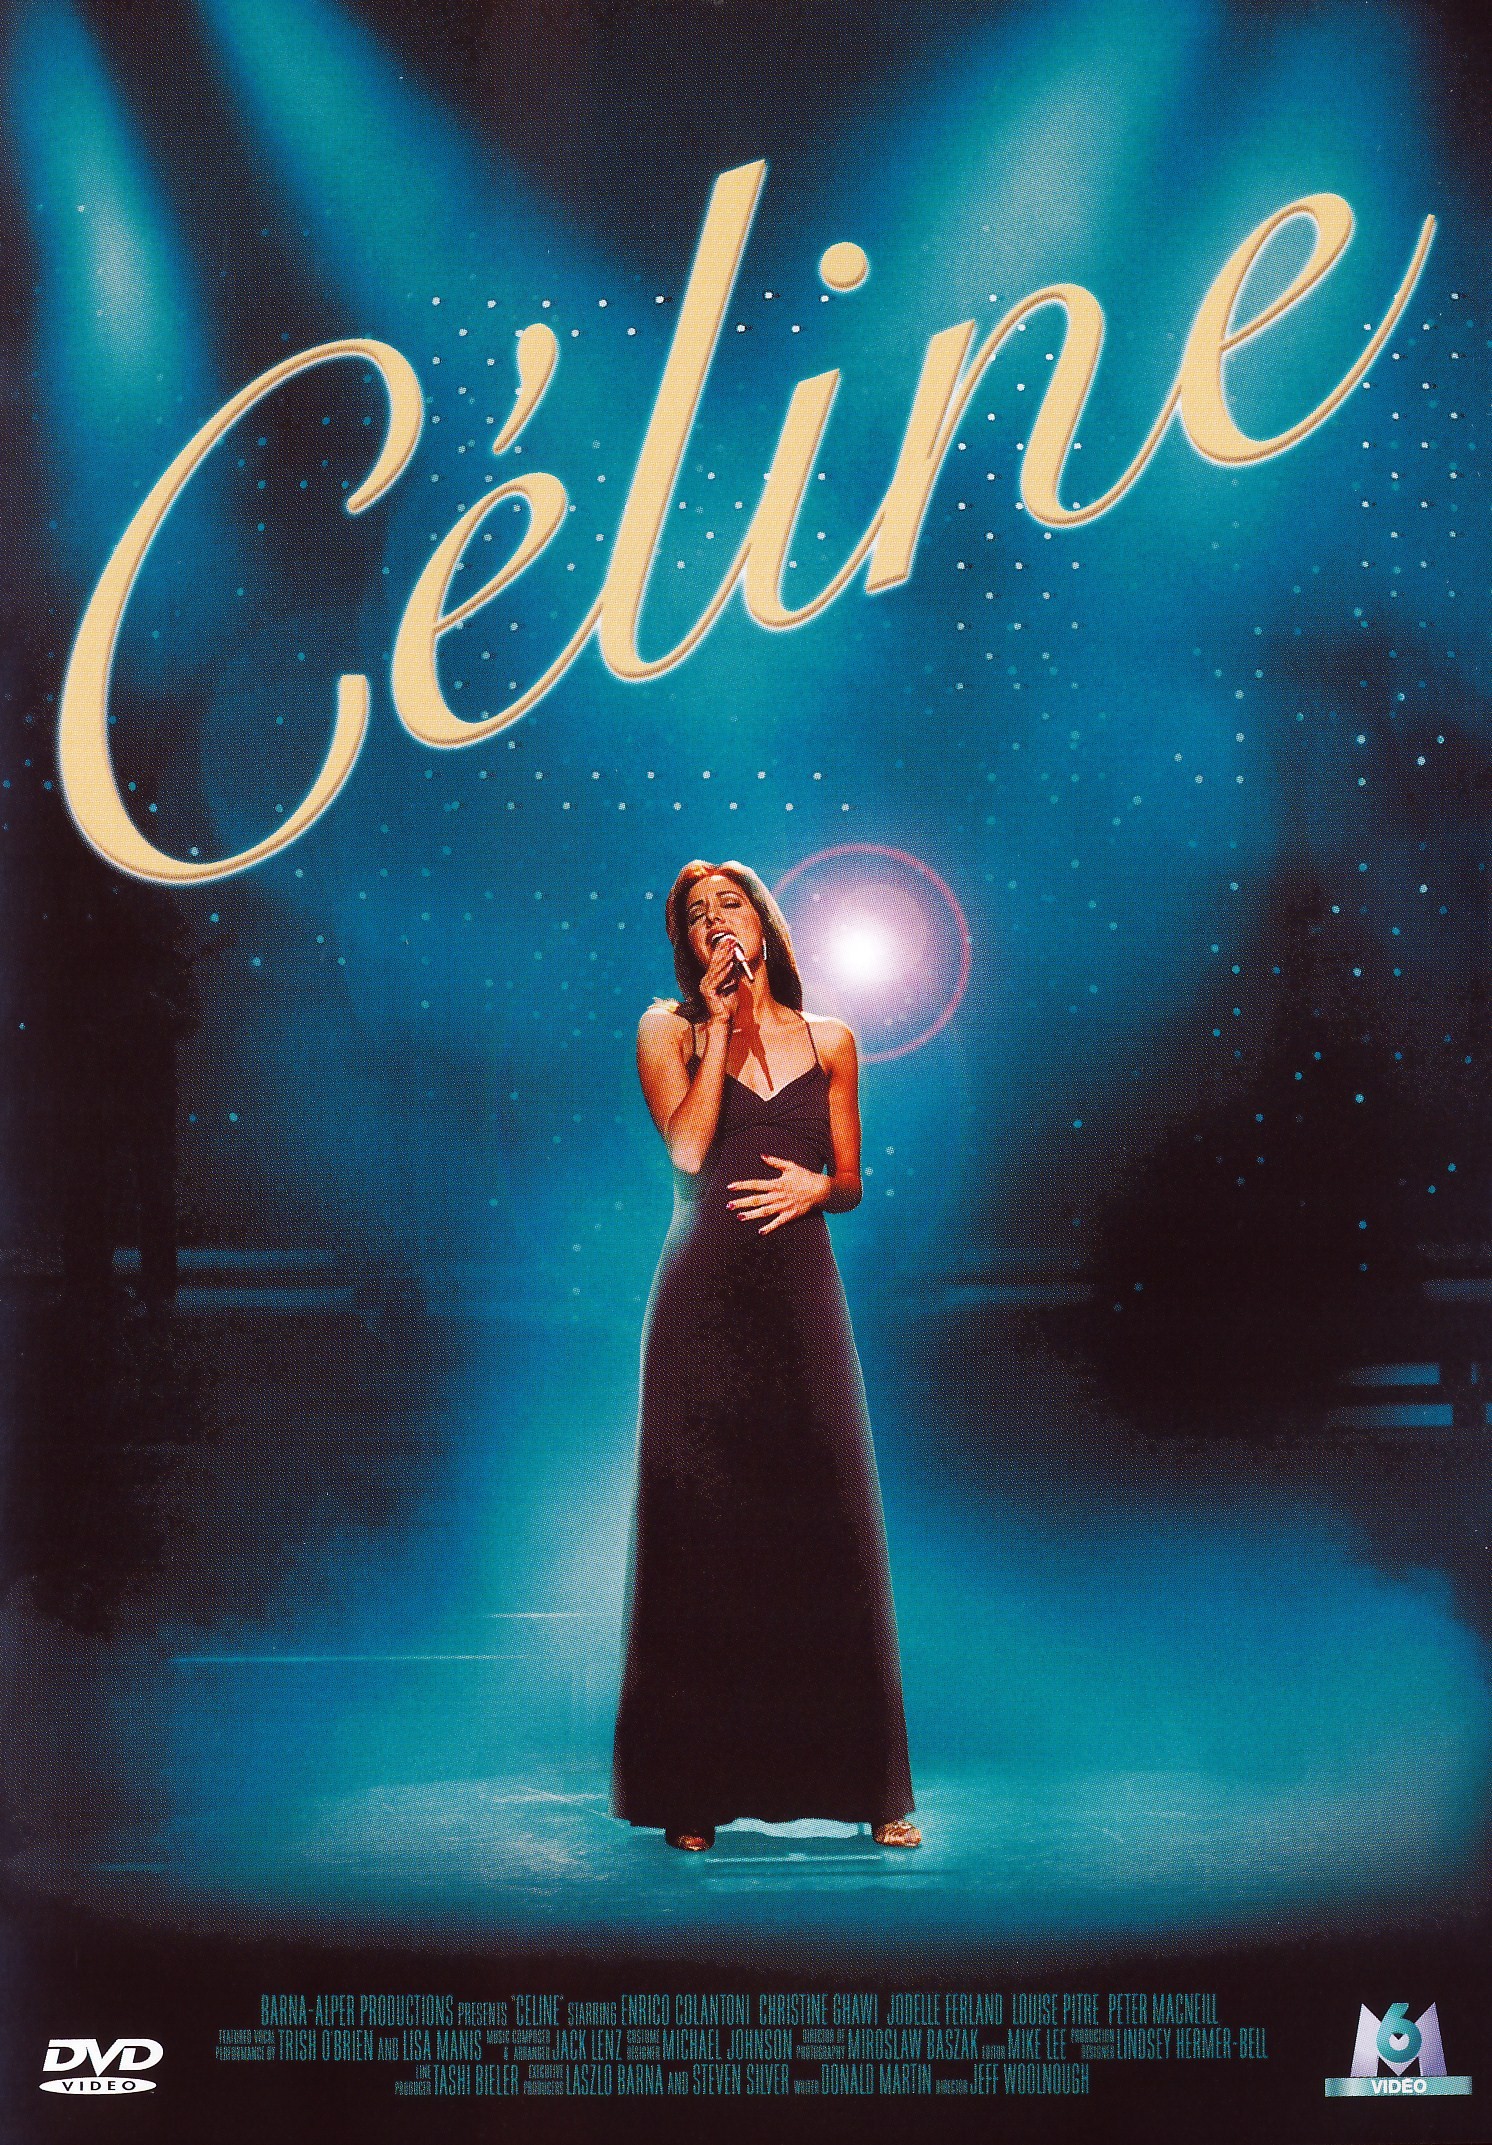 affiche du film Céline